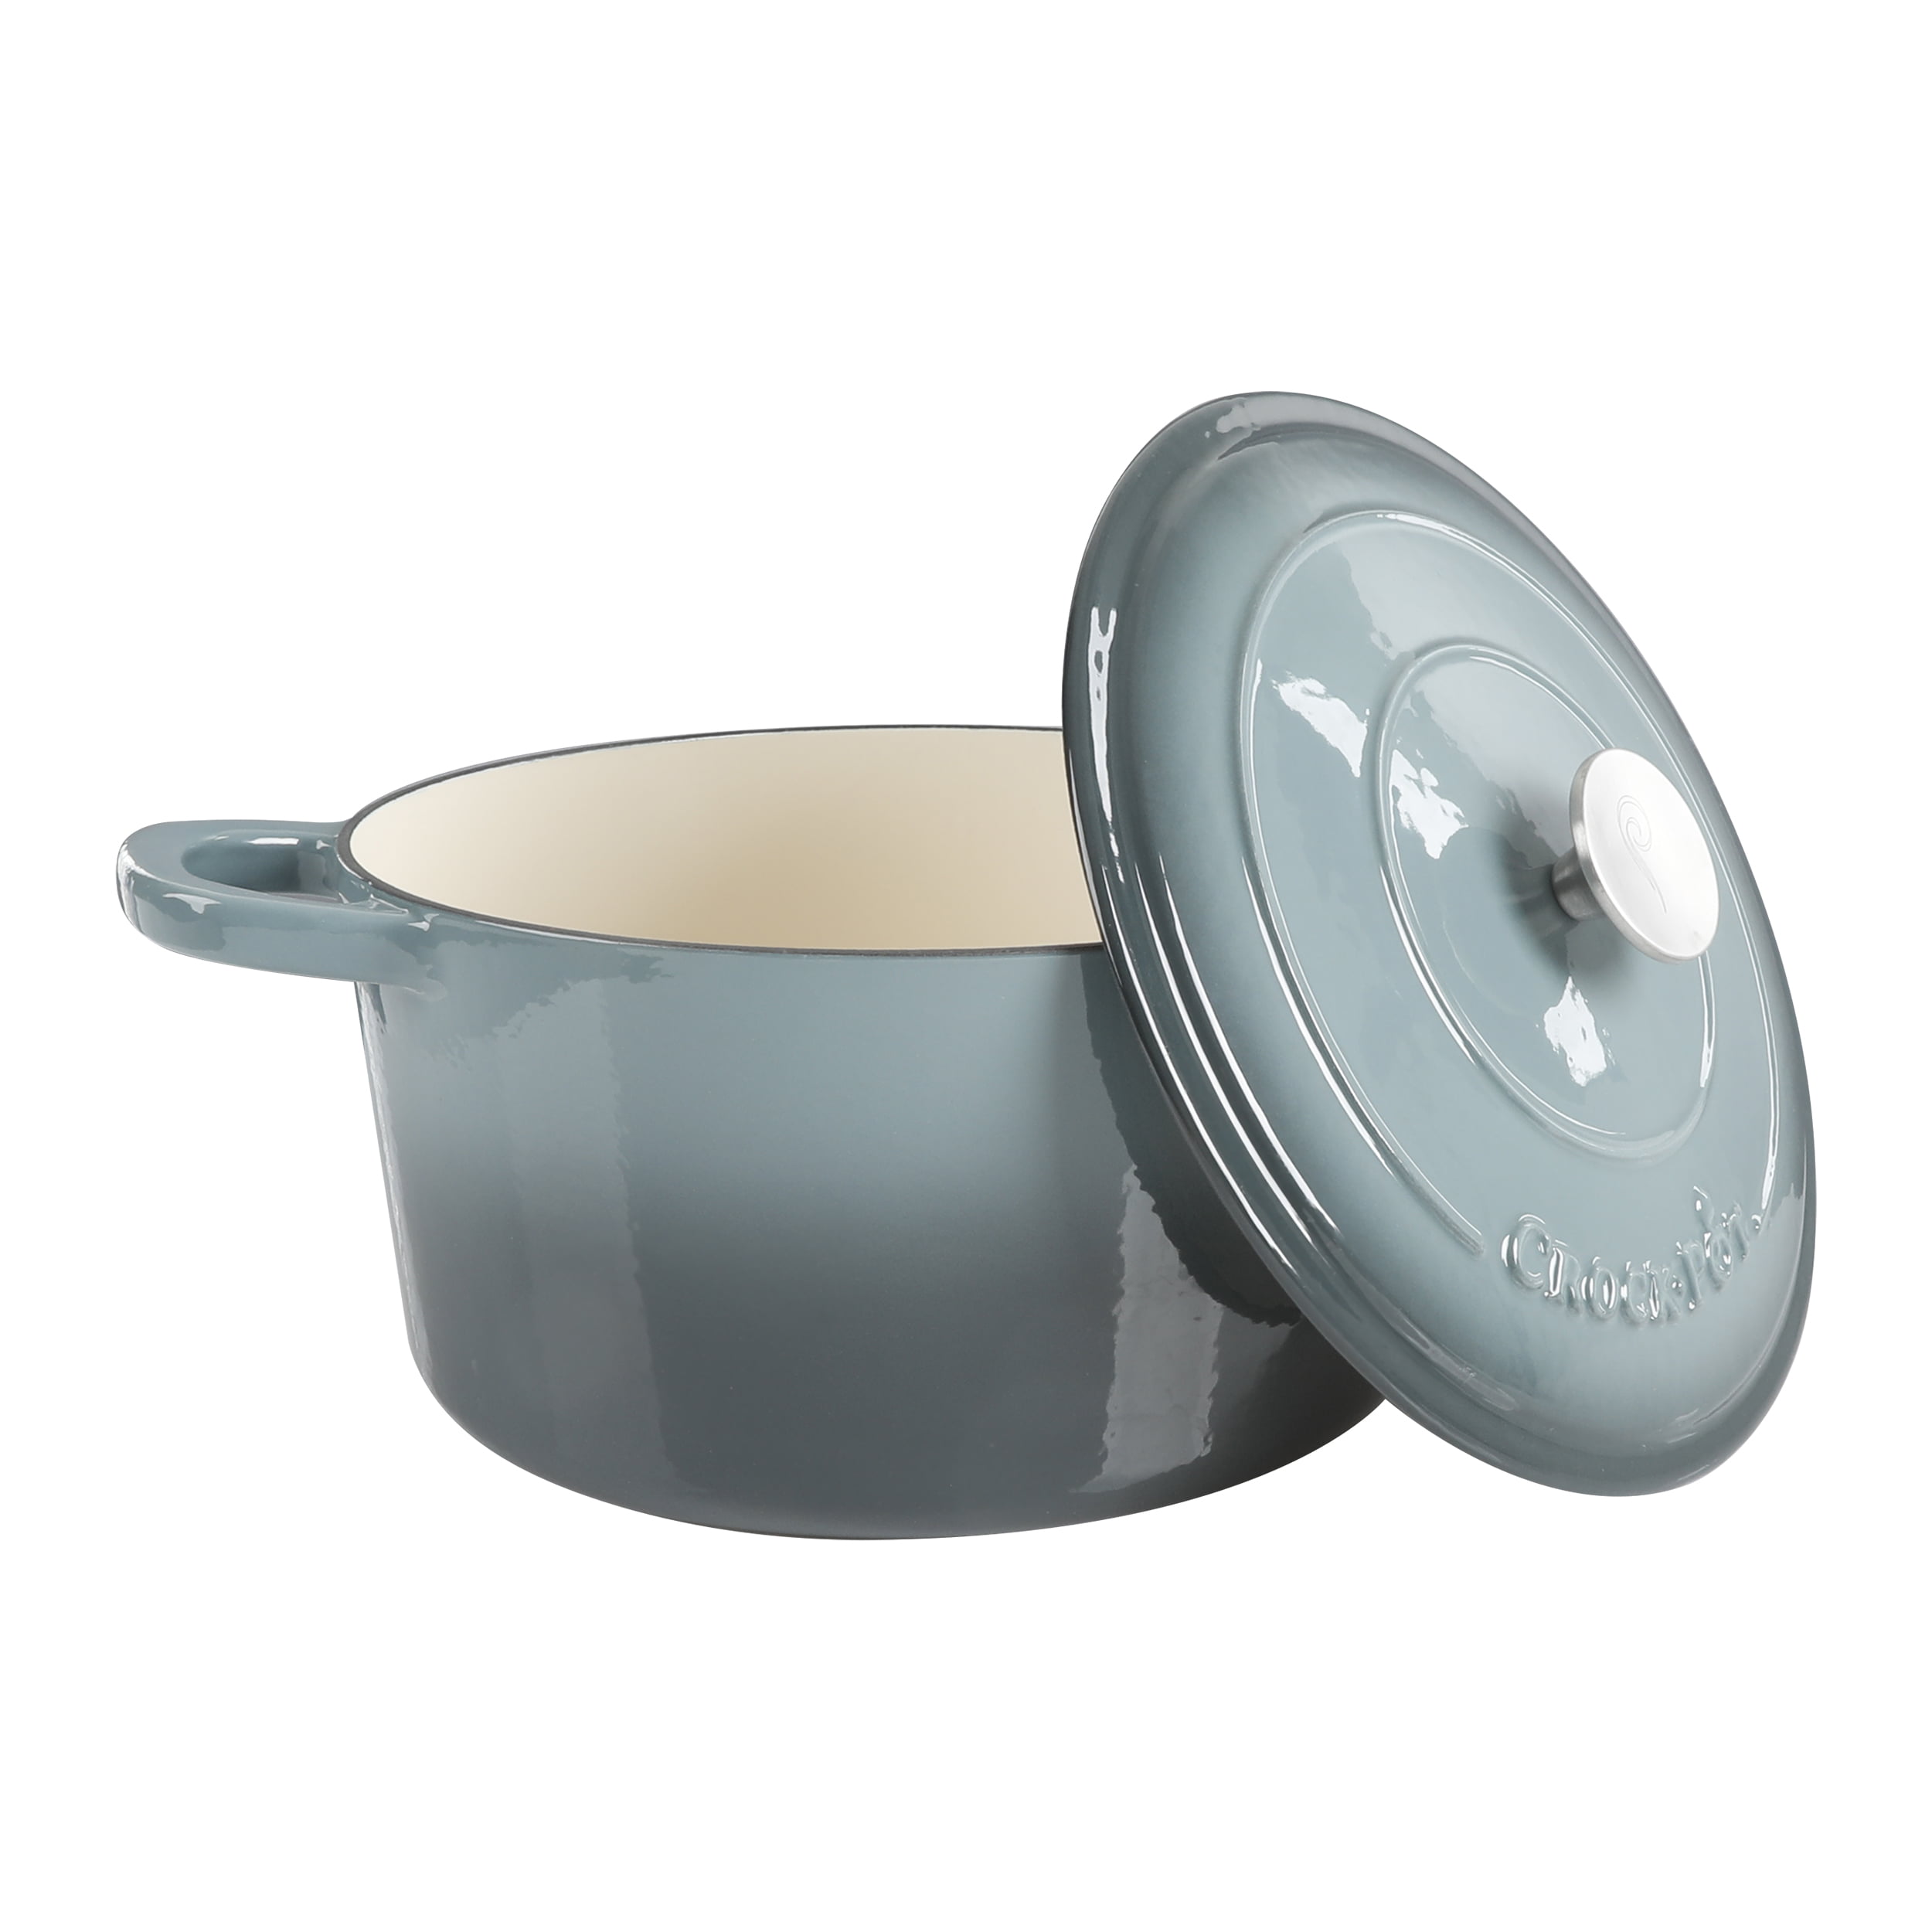 Crock Pot Artisan 7-Quart Oval Dutch Oven - Gray, 7 qt - Harris Teeter